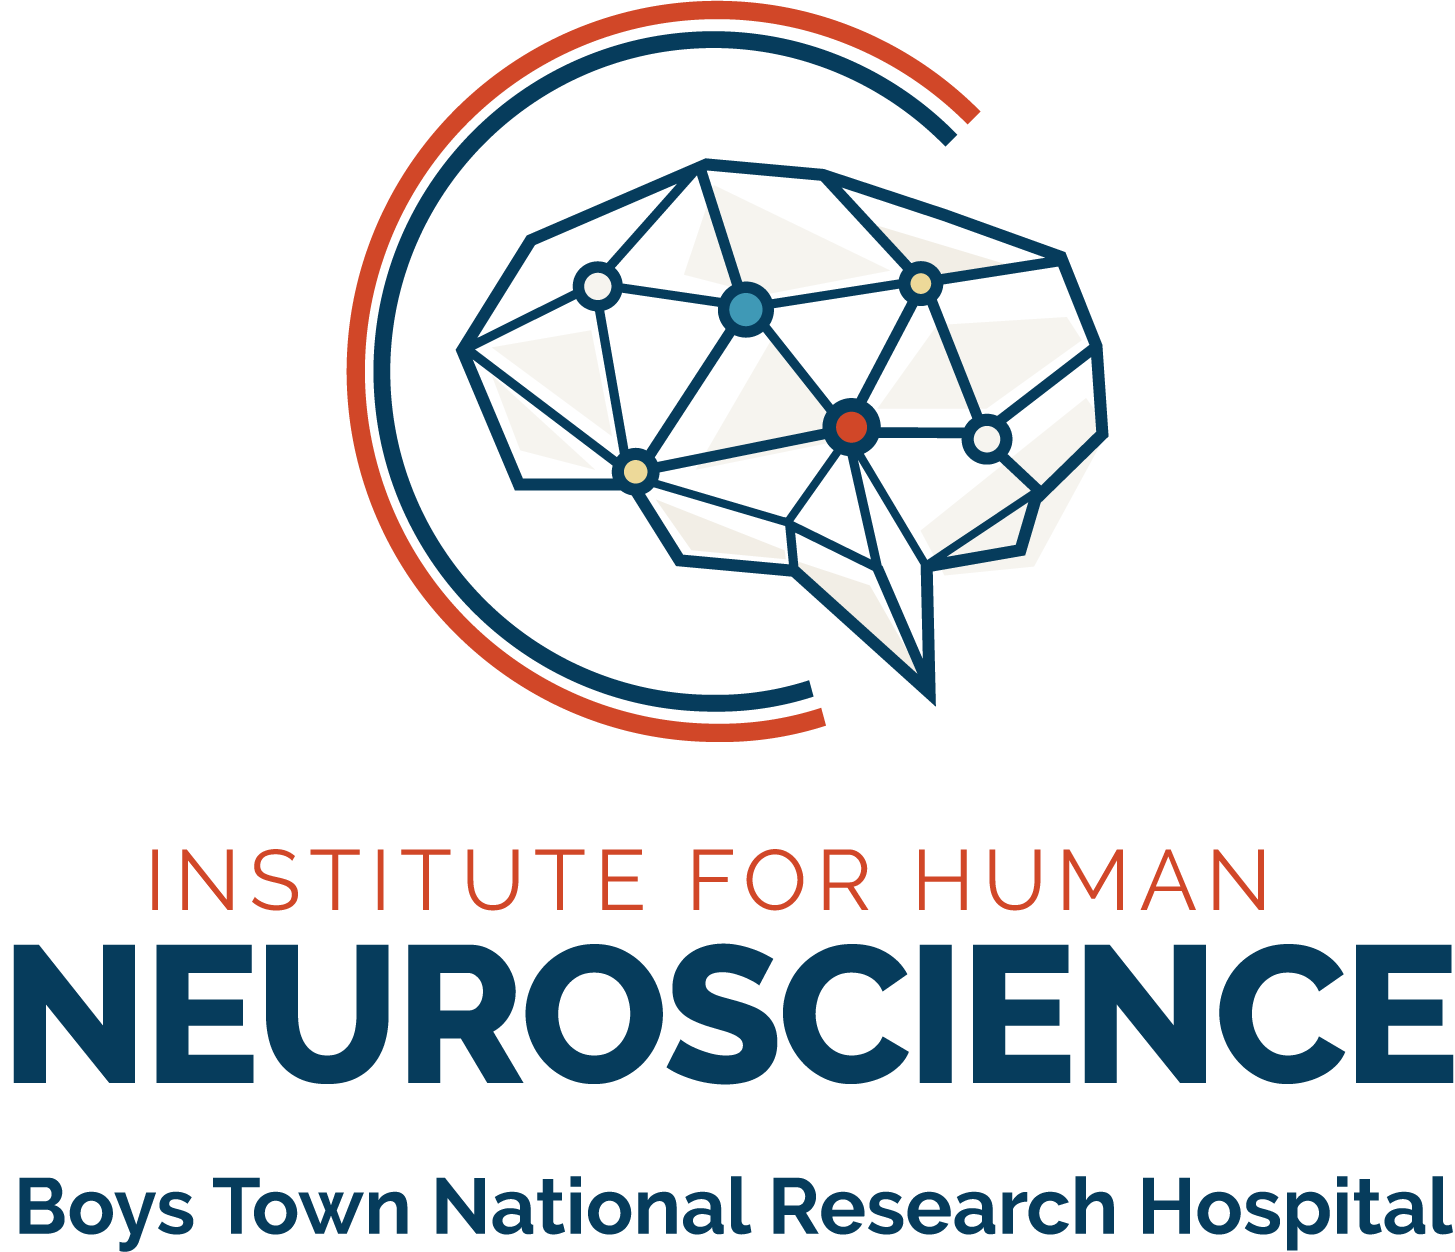 Laboratorio DICoN en el Instituto de Neurociencias Humanas, Investigación Nacional de Boys Town